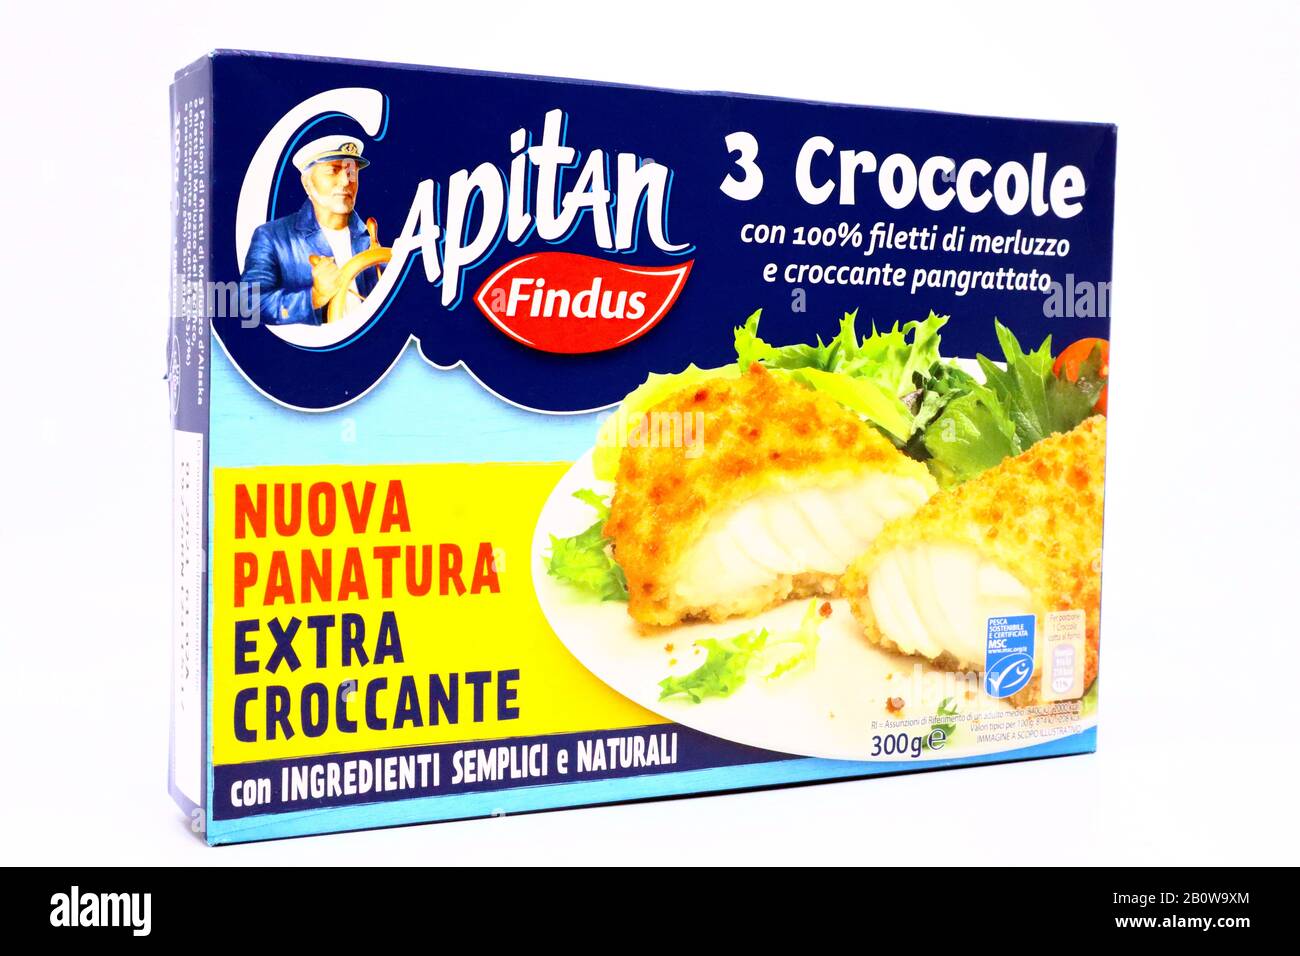 Captain Findu Merluzzo Filetti Di Pesce In Croccante Breadbriciole. FindUs  è un marchio di alimenti surgelati di Nomad Foods Group Foto stock - Alamy